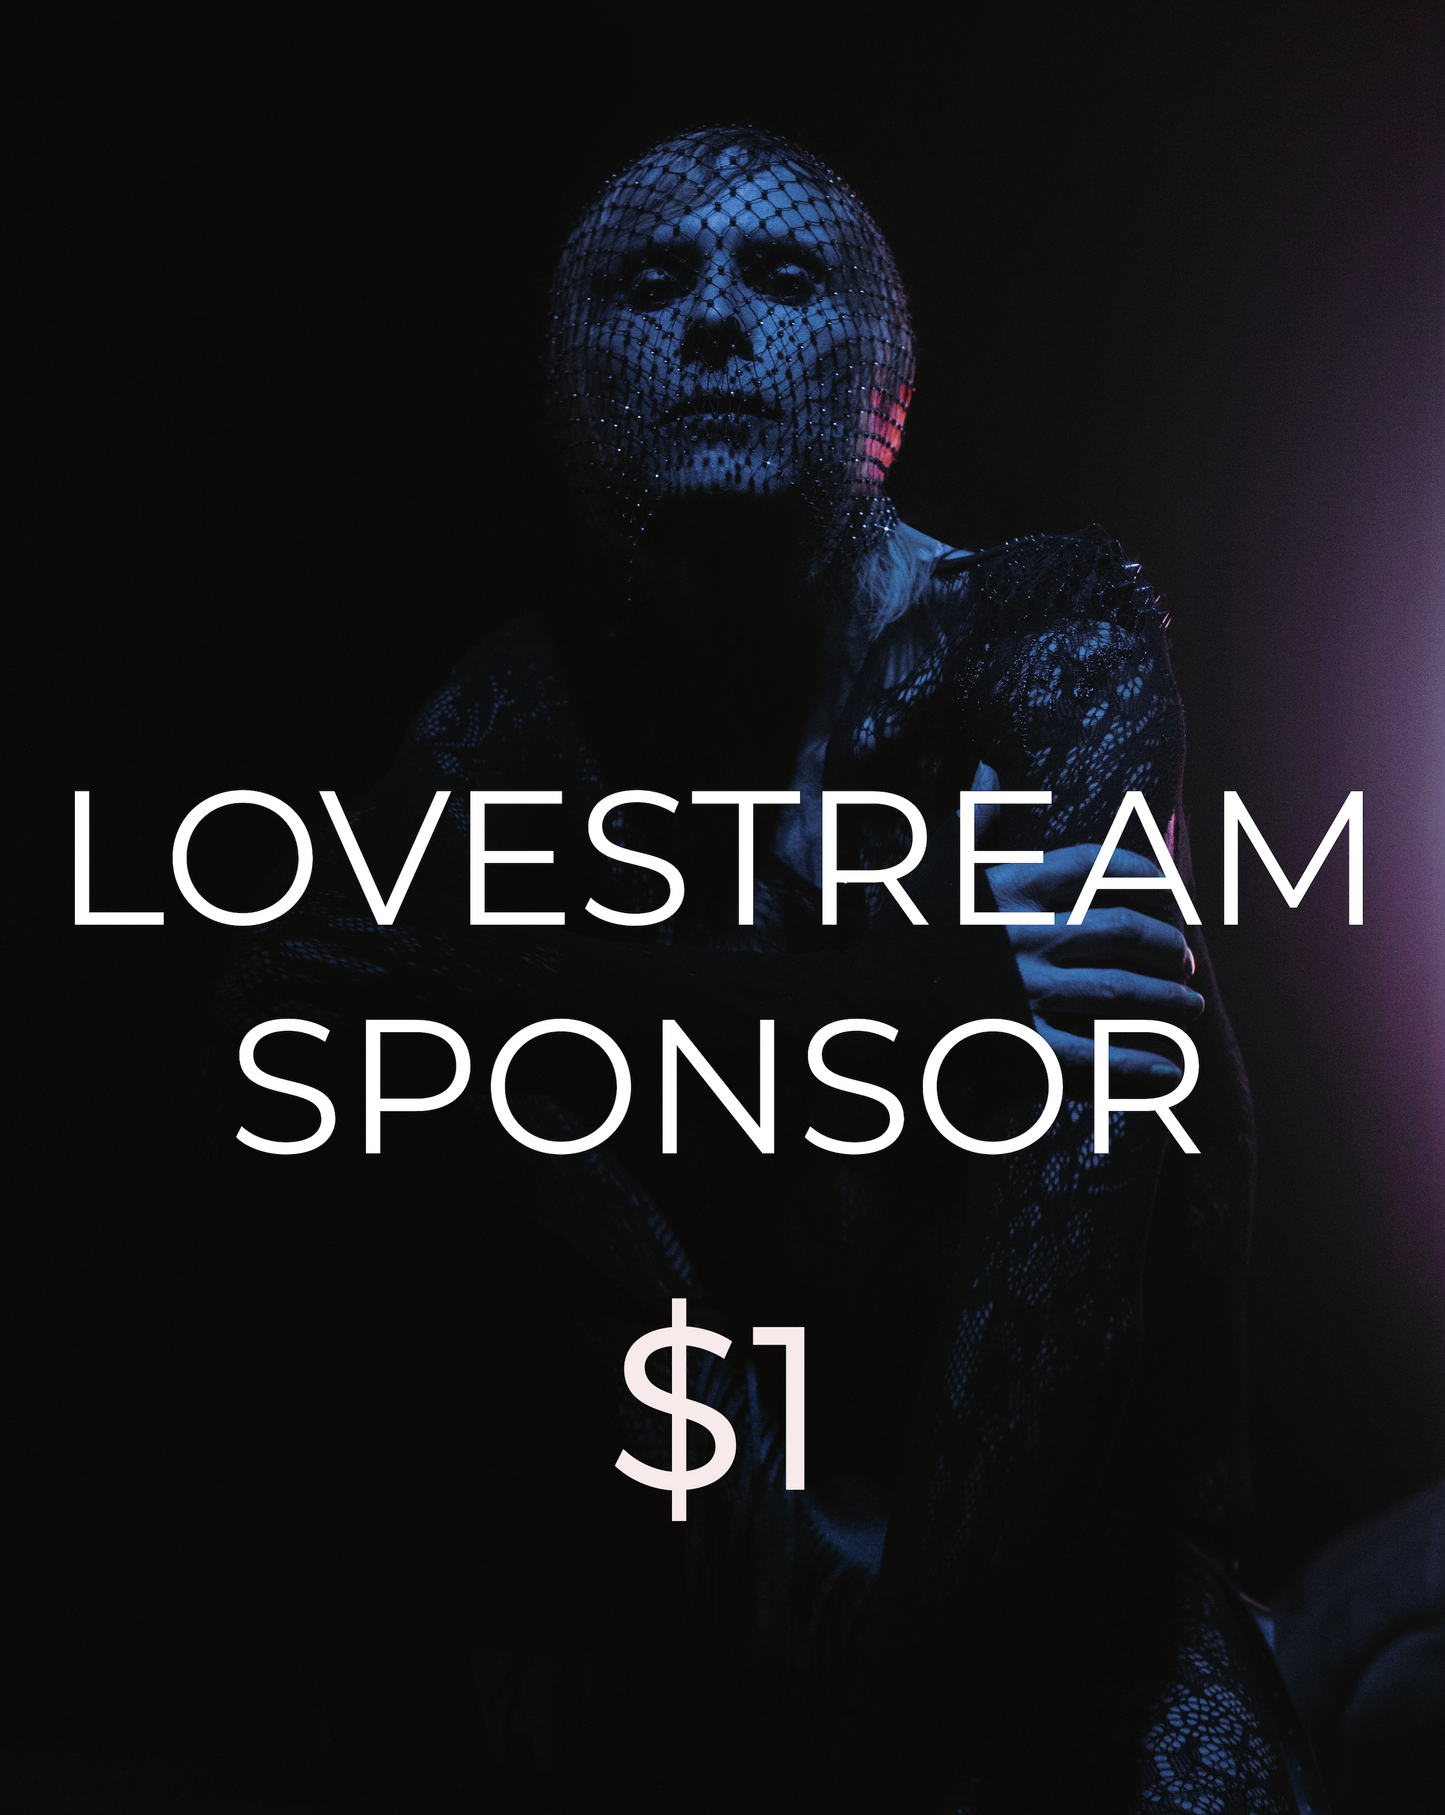 LOVEstream Sponsor $1